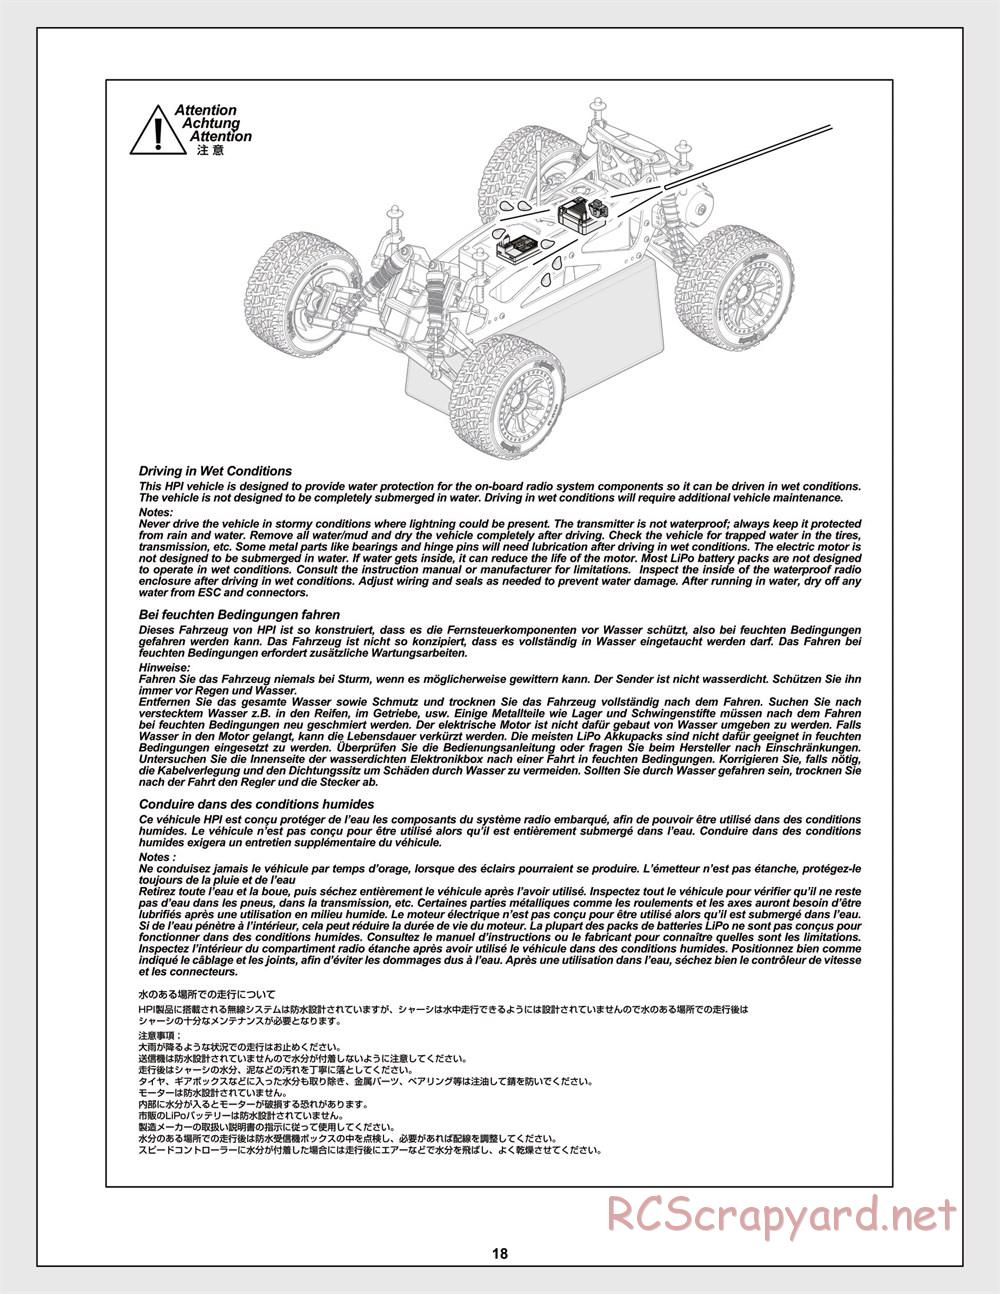 HPI - Jumpshot MT V2 - Manual - Page 18